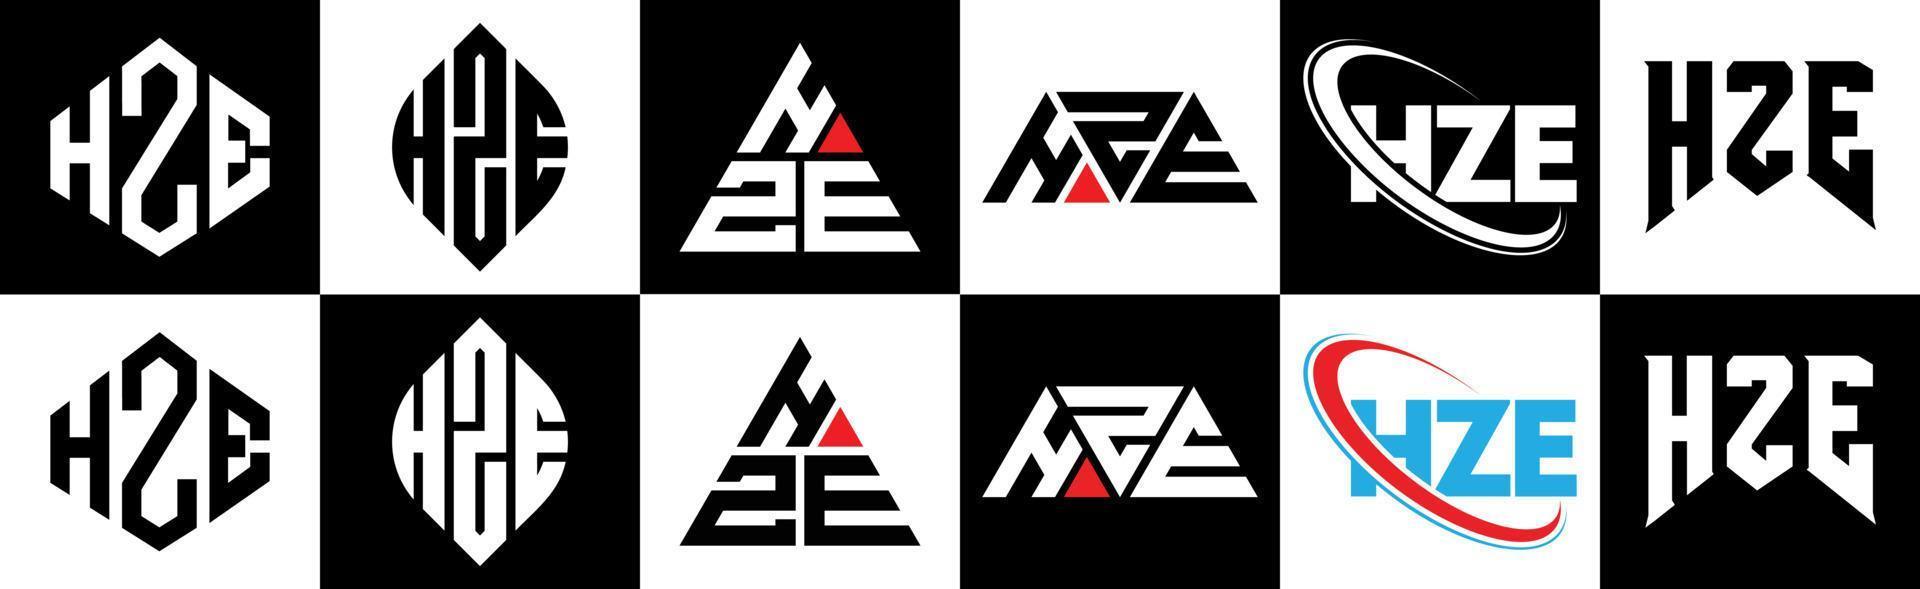 hze-Buchstaben-Logo-Design in sechs Stilen. hze polygon, kreis, dreieck, sechseck, flacher und einfacher stil mit schwarz-weißem buchstabenlogo in einer zeichenfläche. hze minimalistisches und klassisches Logo vektor